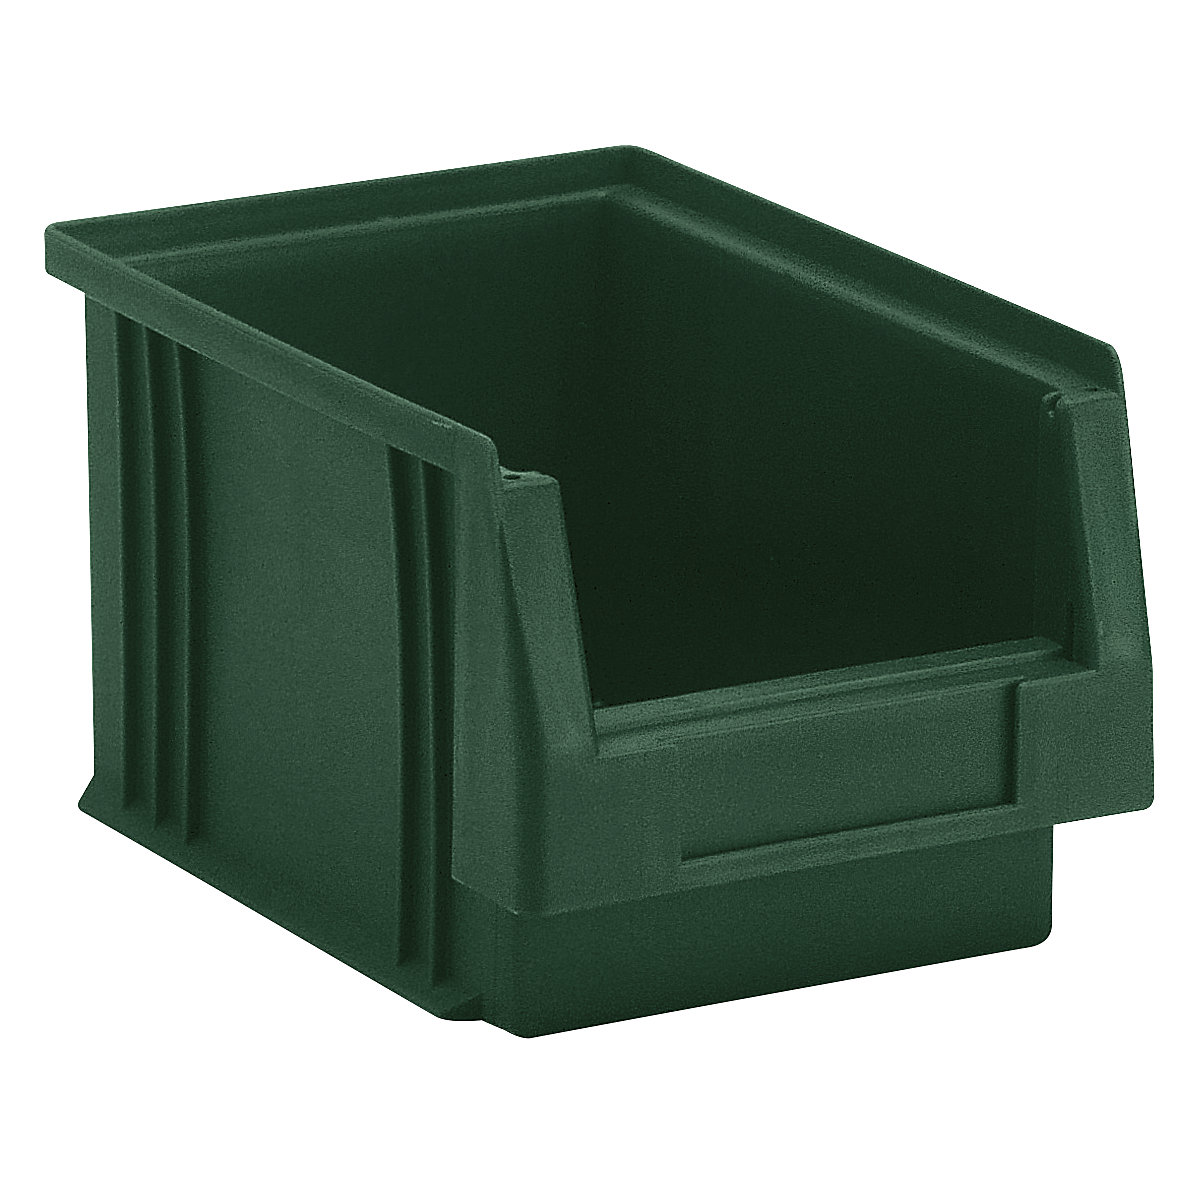 Otwarty pojemnik magazynowy z polipropylenu, poj. 2,7 l, opak. 25 szt., zielony-5